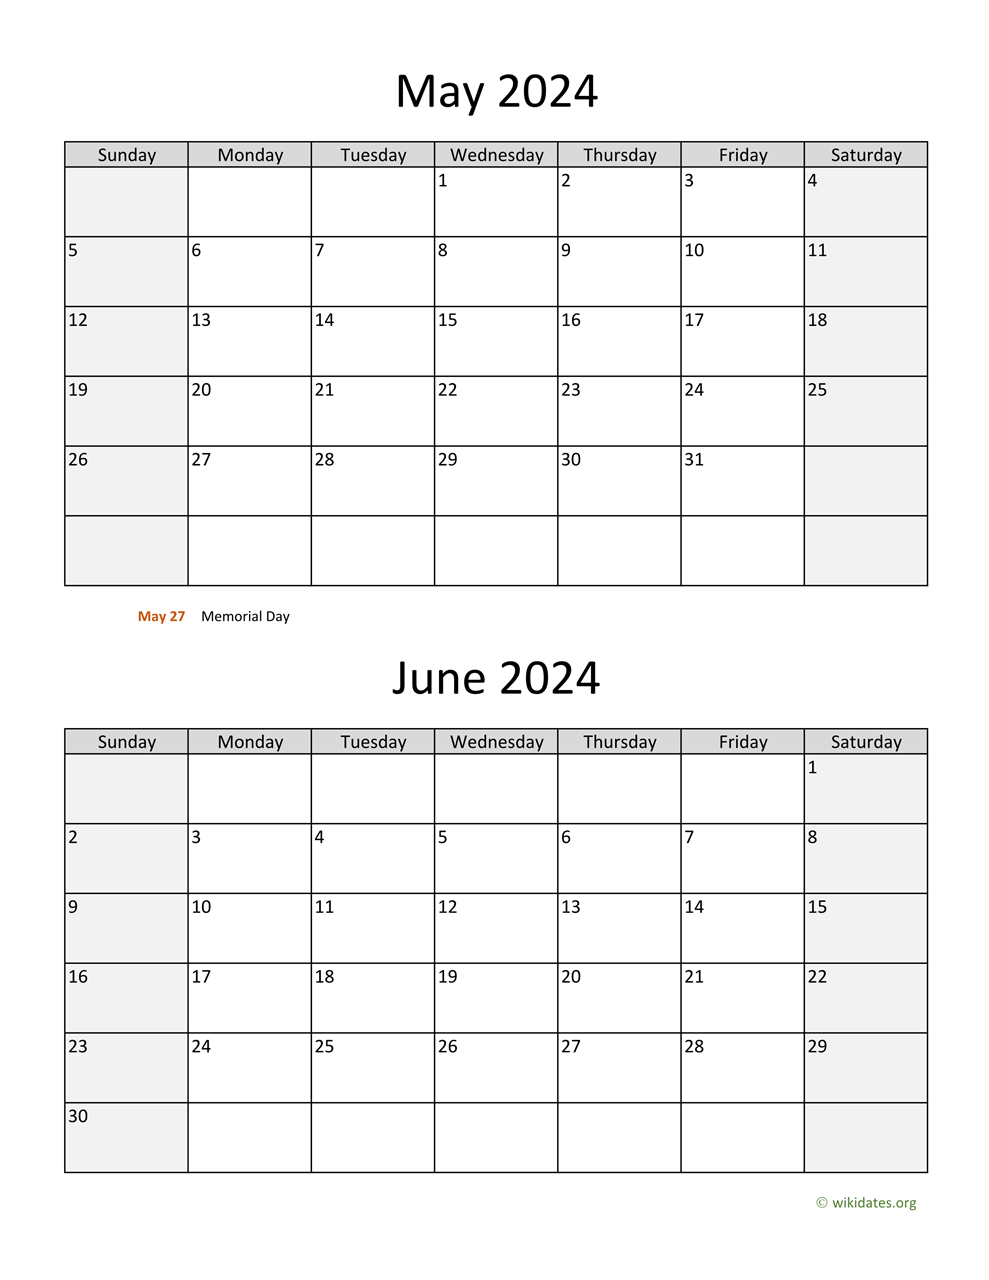 May And June 2024 Calendar | Wikidates for May/June 2024 Printable Calendar